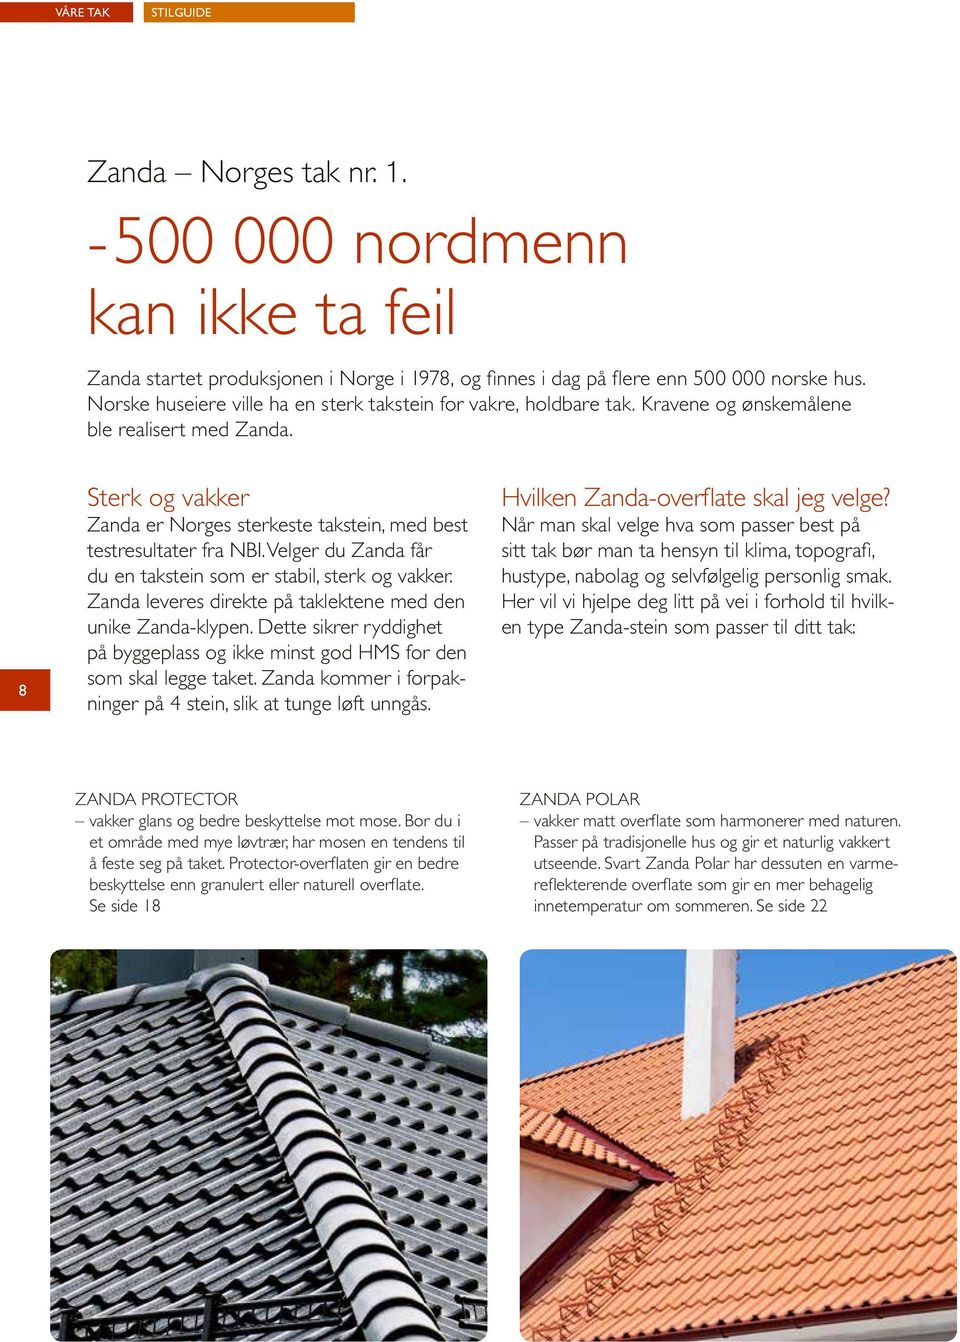 8 Sterk og vakker Zanda er Norges sterkeste takstein, med best testresultater fra NBI. Velger du Zanda får du en takstein som er stabil, sterk og vakker.